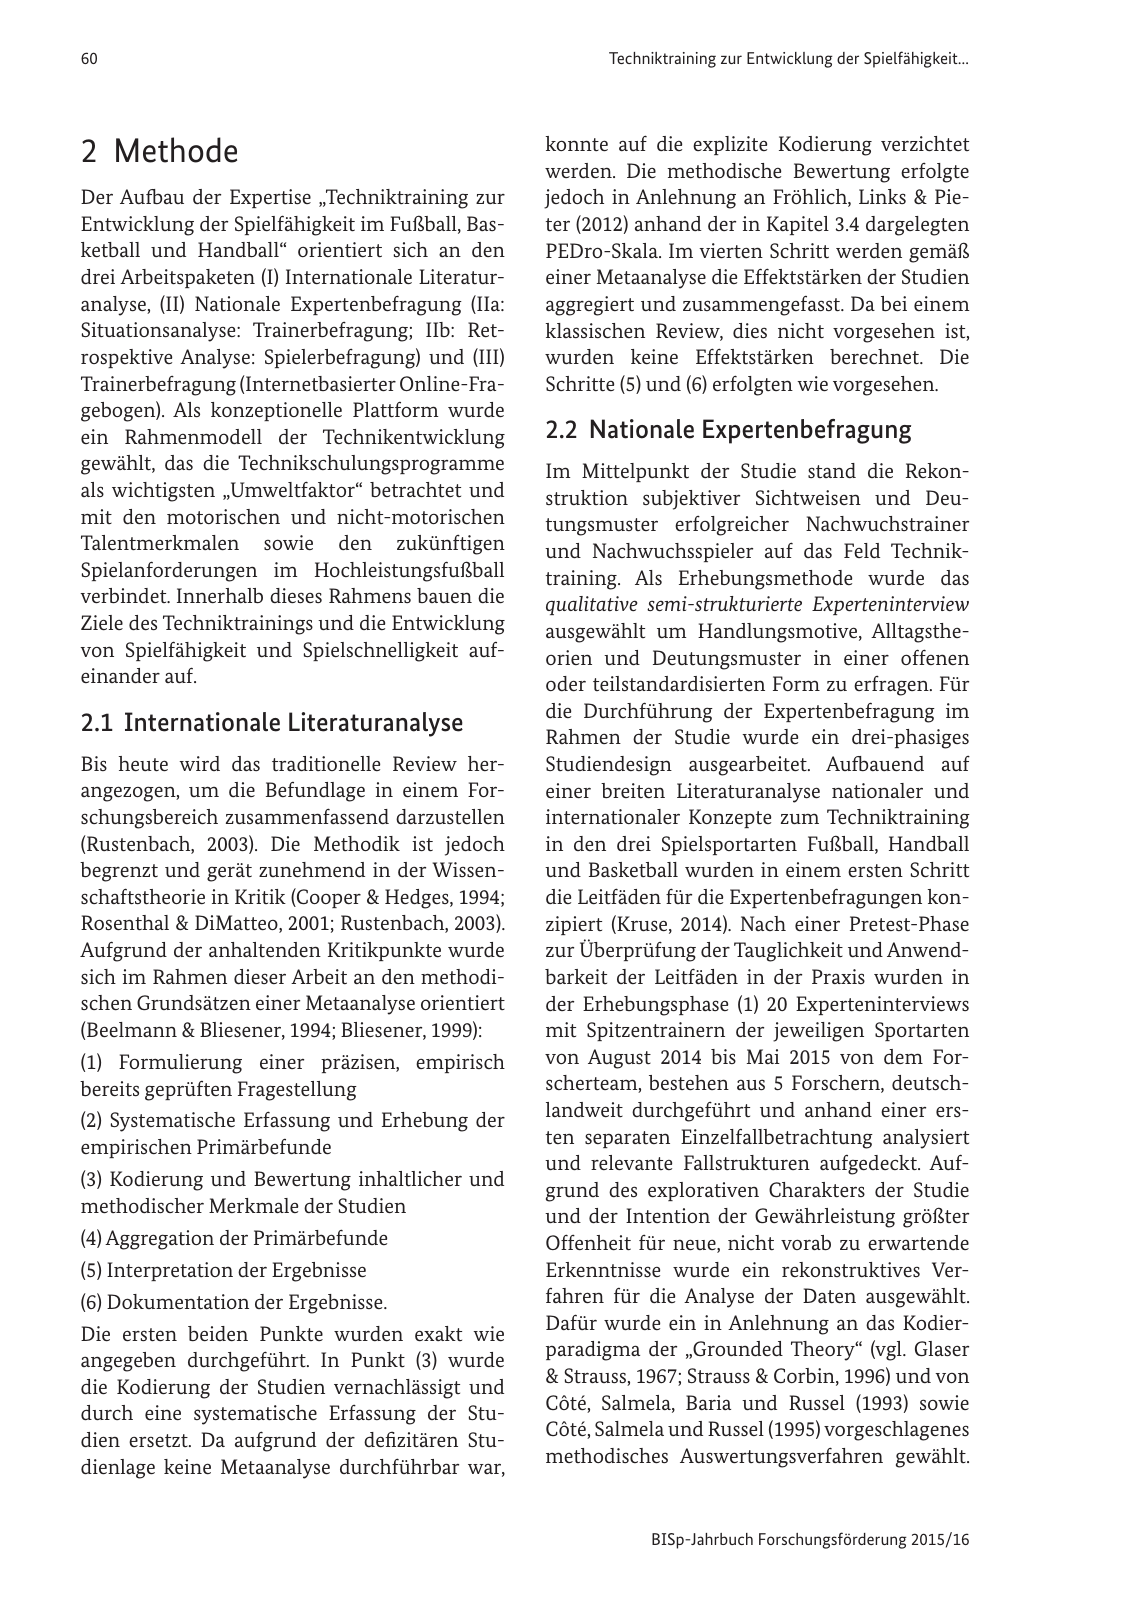 Vorschau BISp-Jahrbuch Forschungsförderung 2015/16 Seite 62